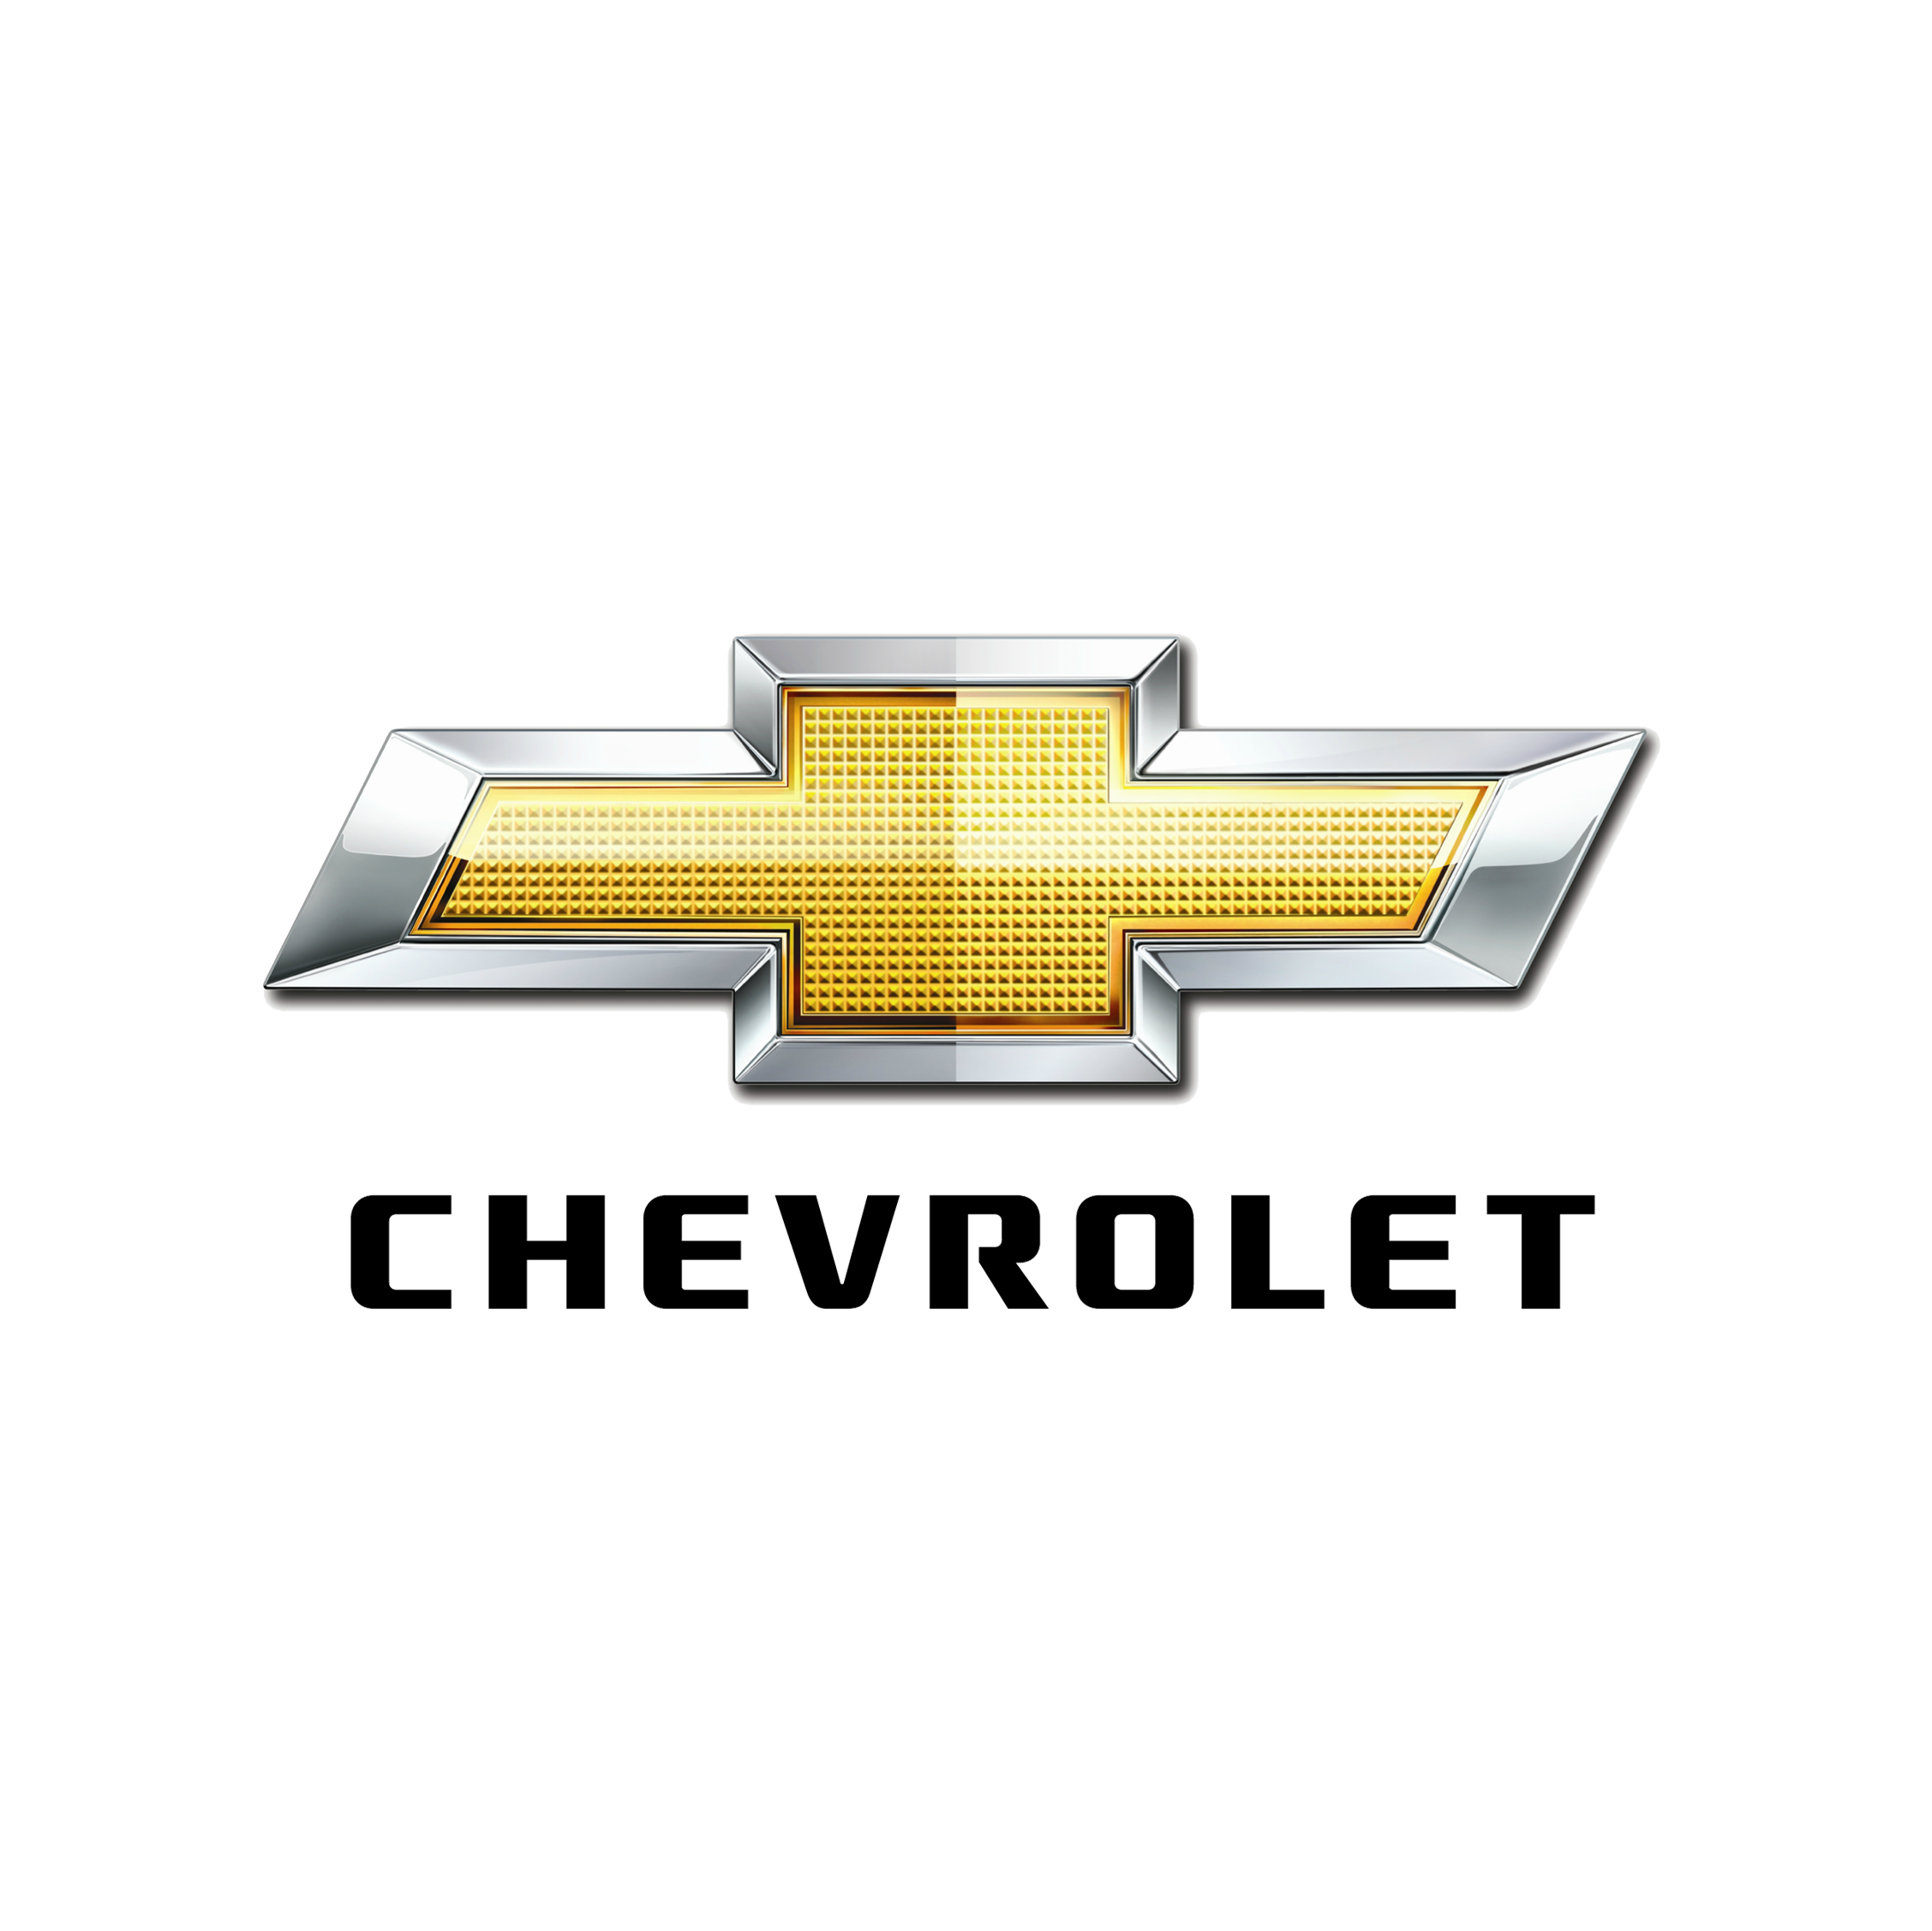 Chevrolet - sprrawdź wszystkie promocje